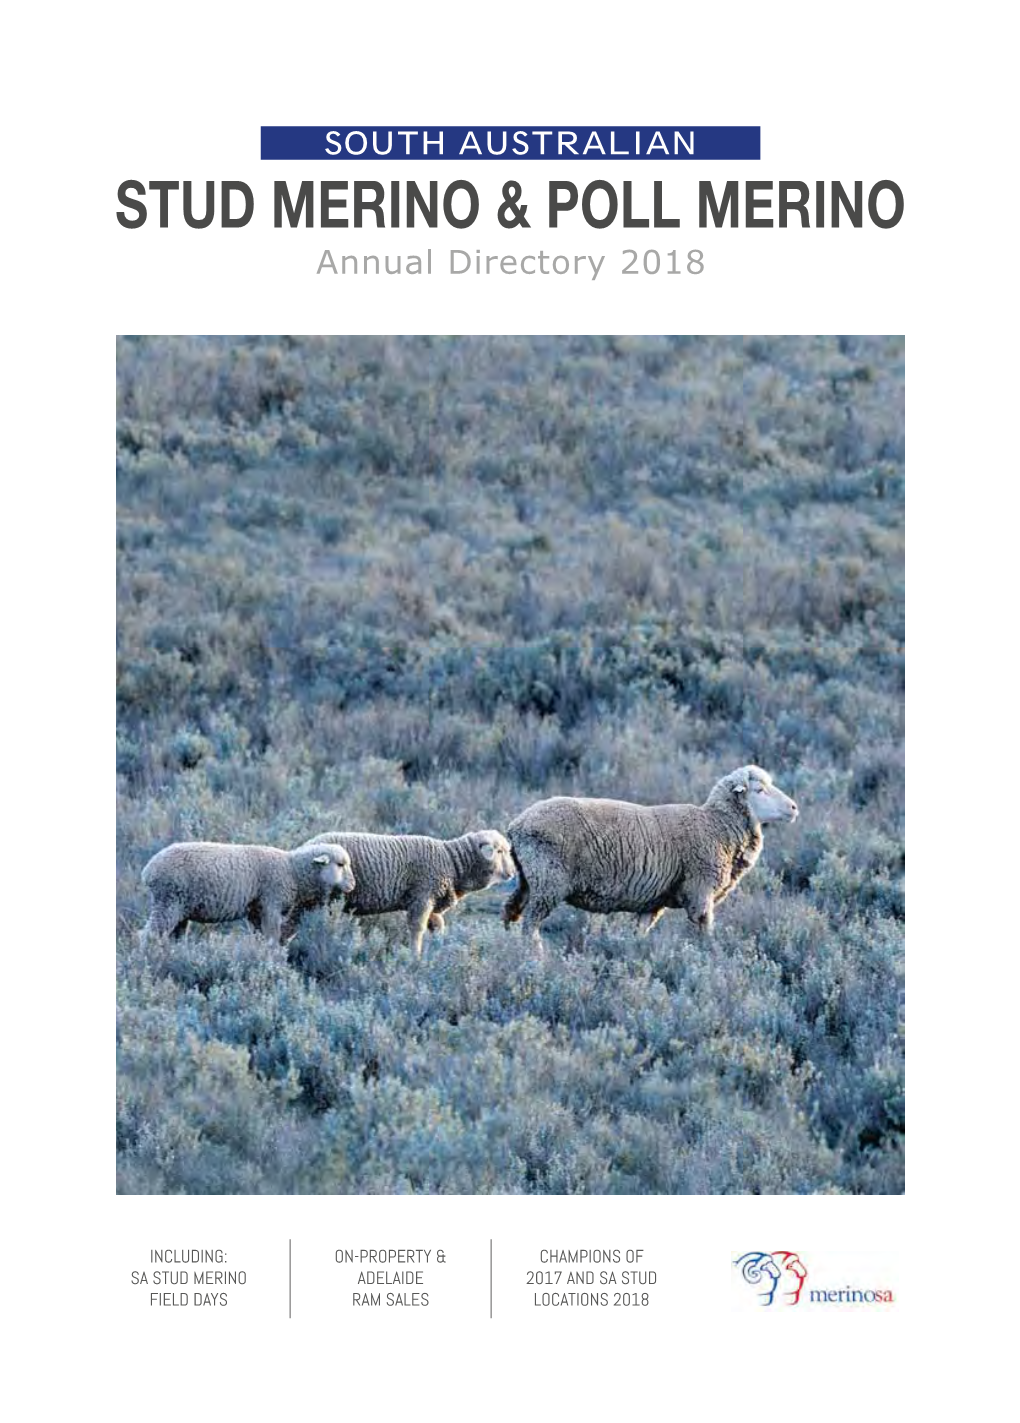 Stud Merino & Poll Merino